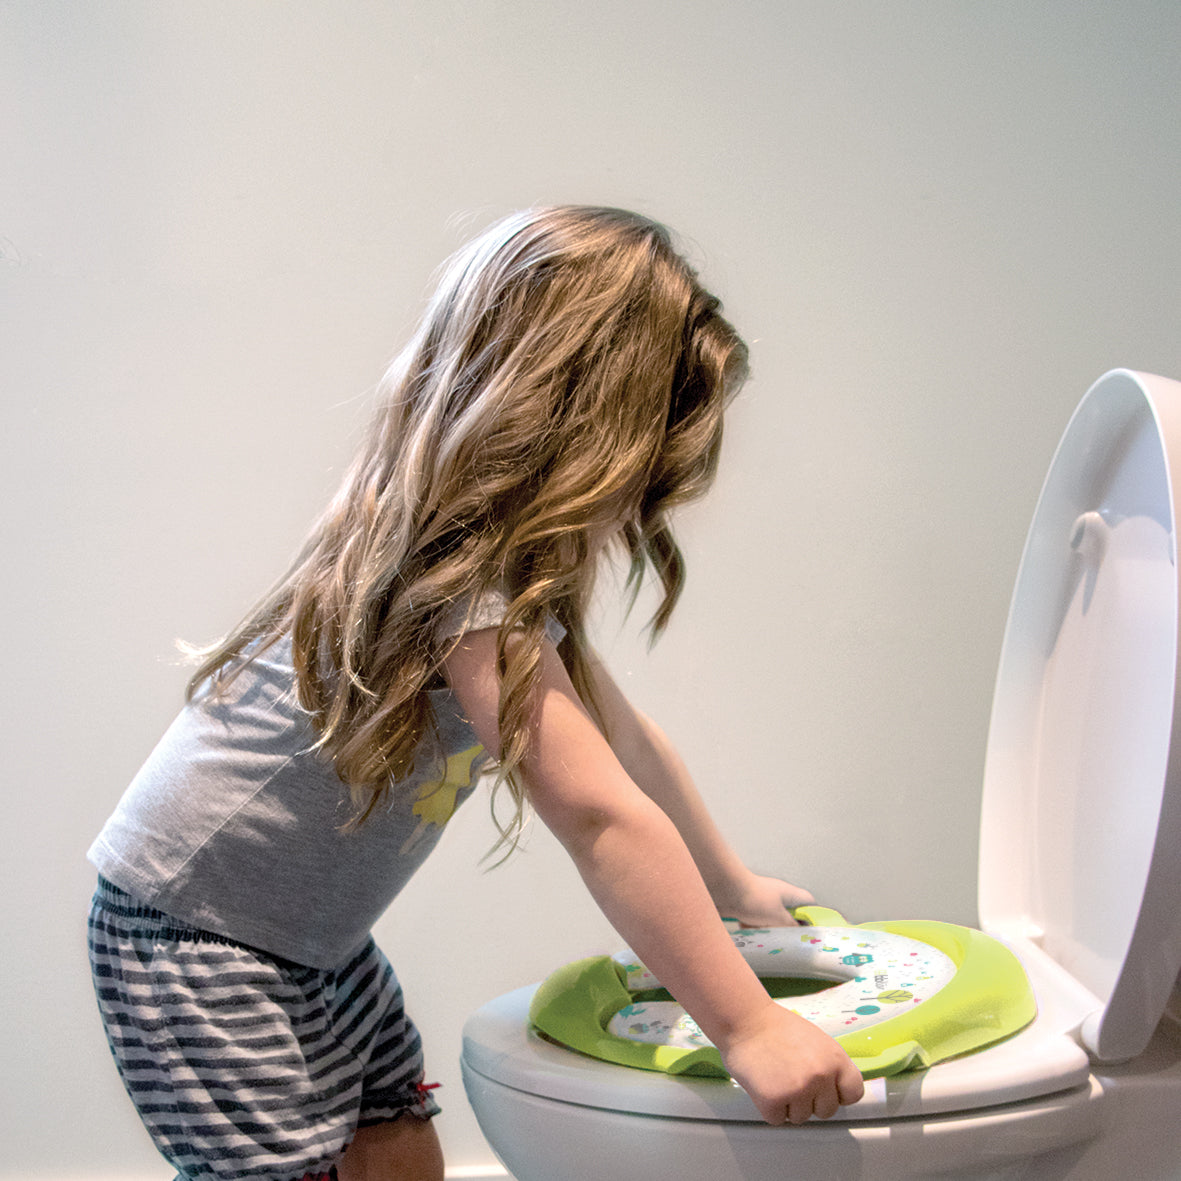 Siège de toilette pour enfants Sièges d'apprentissage de la propreté Siège  de toilette pour enfants